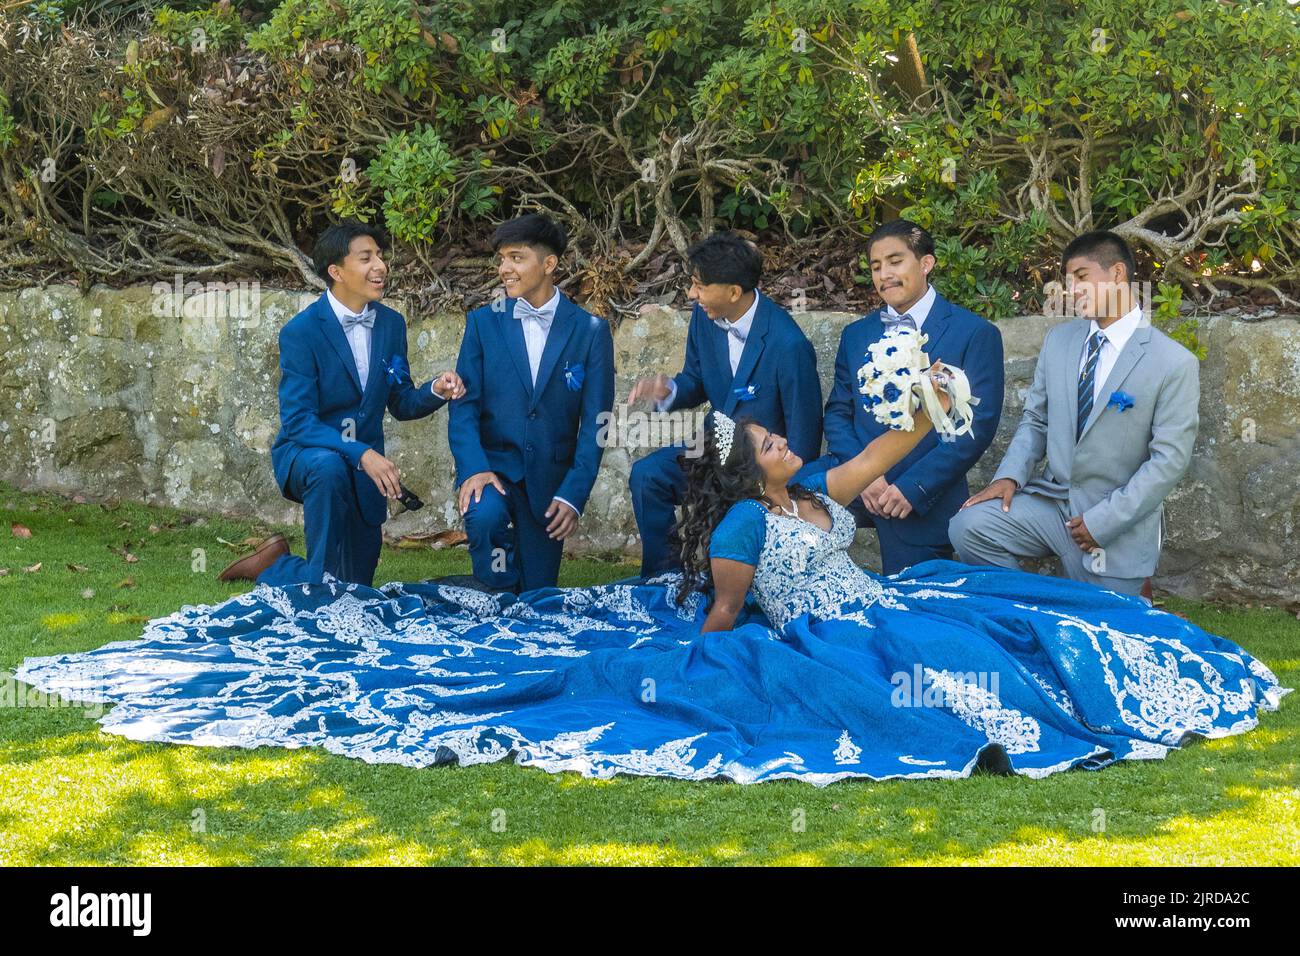 Hispanic wedding party posing for a photo in a garden setting in Santa Barbara, California. Stock Photo